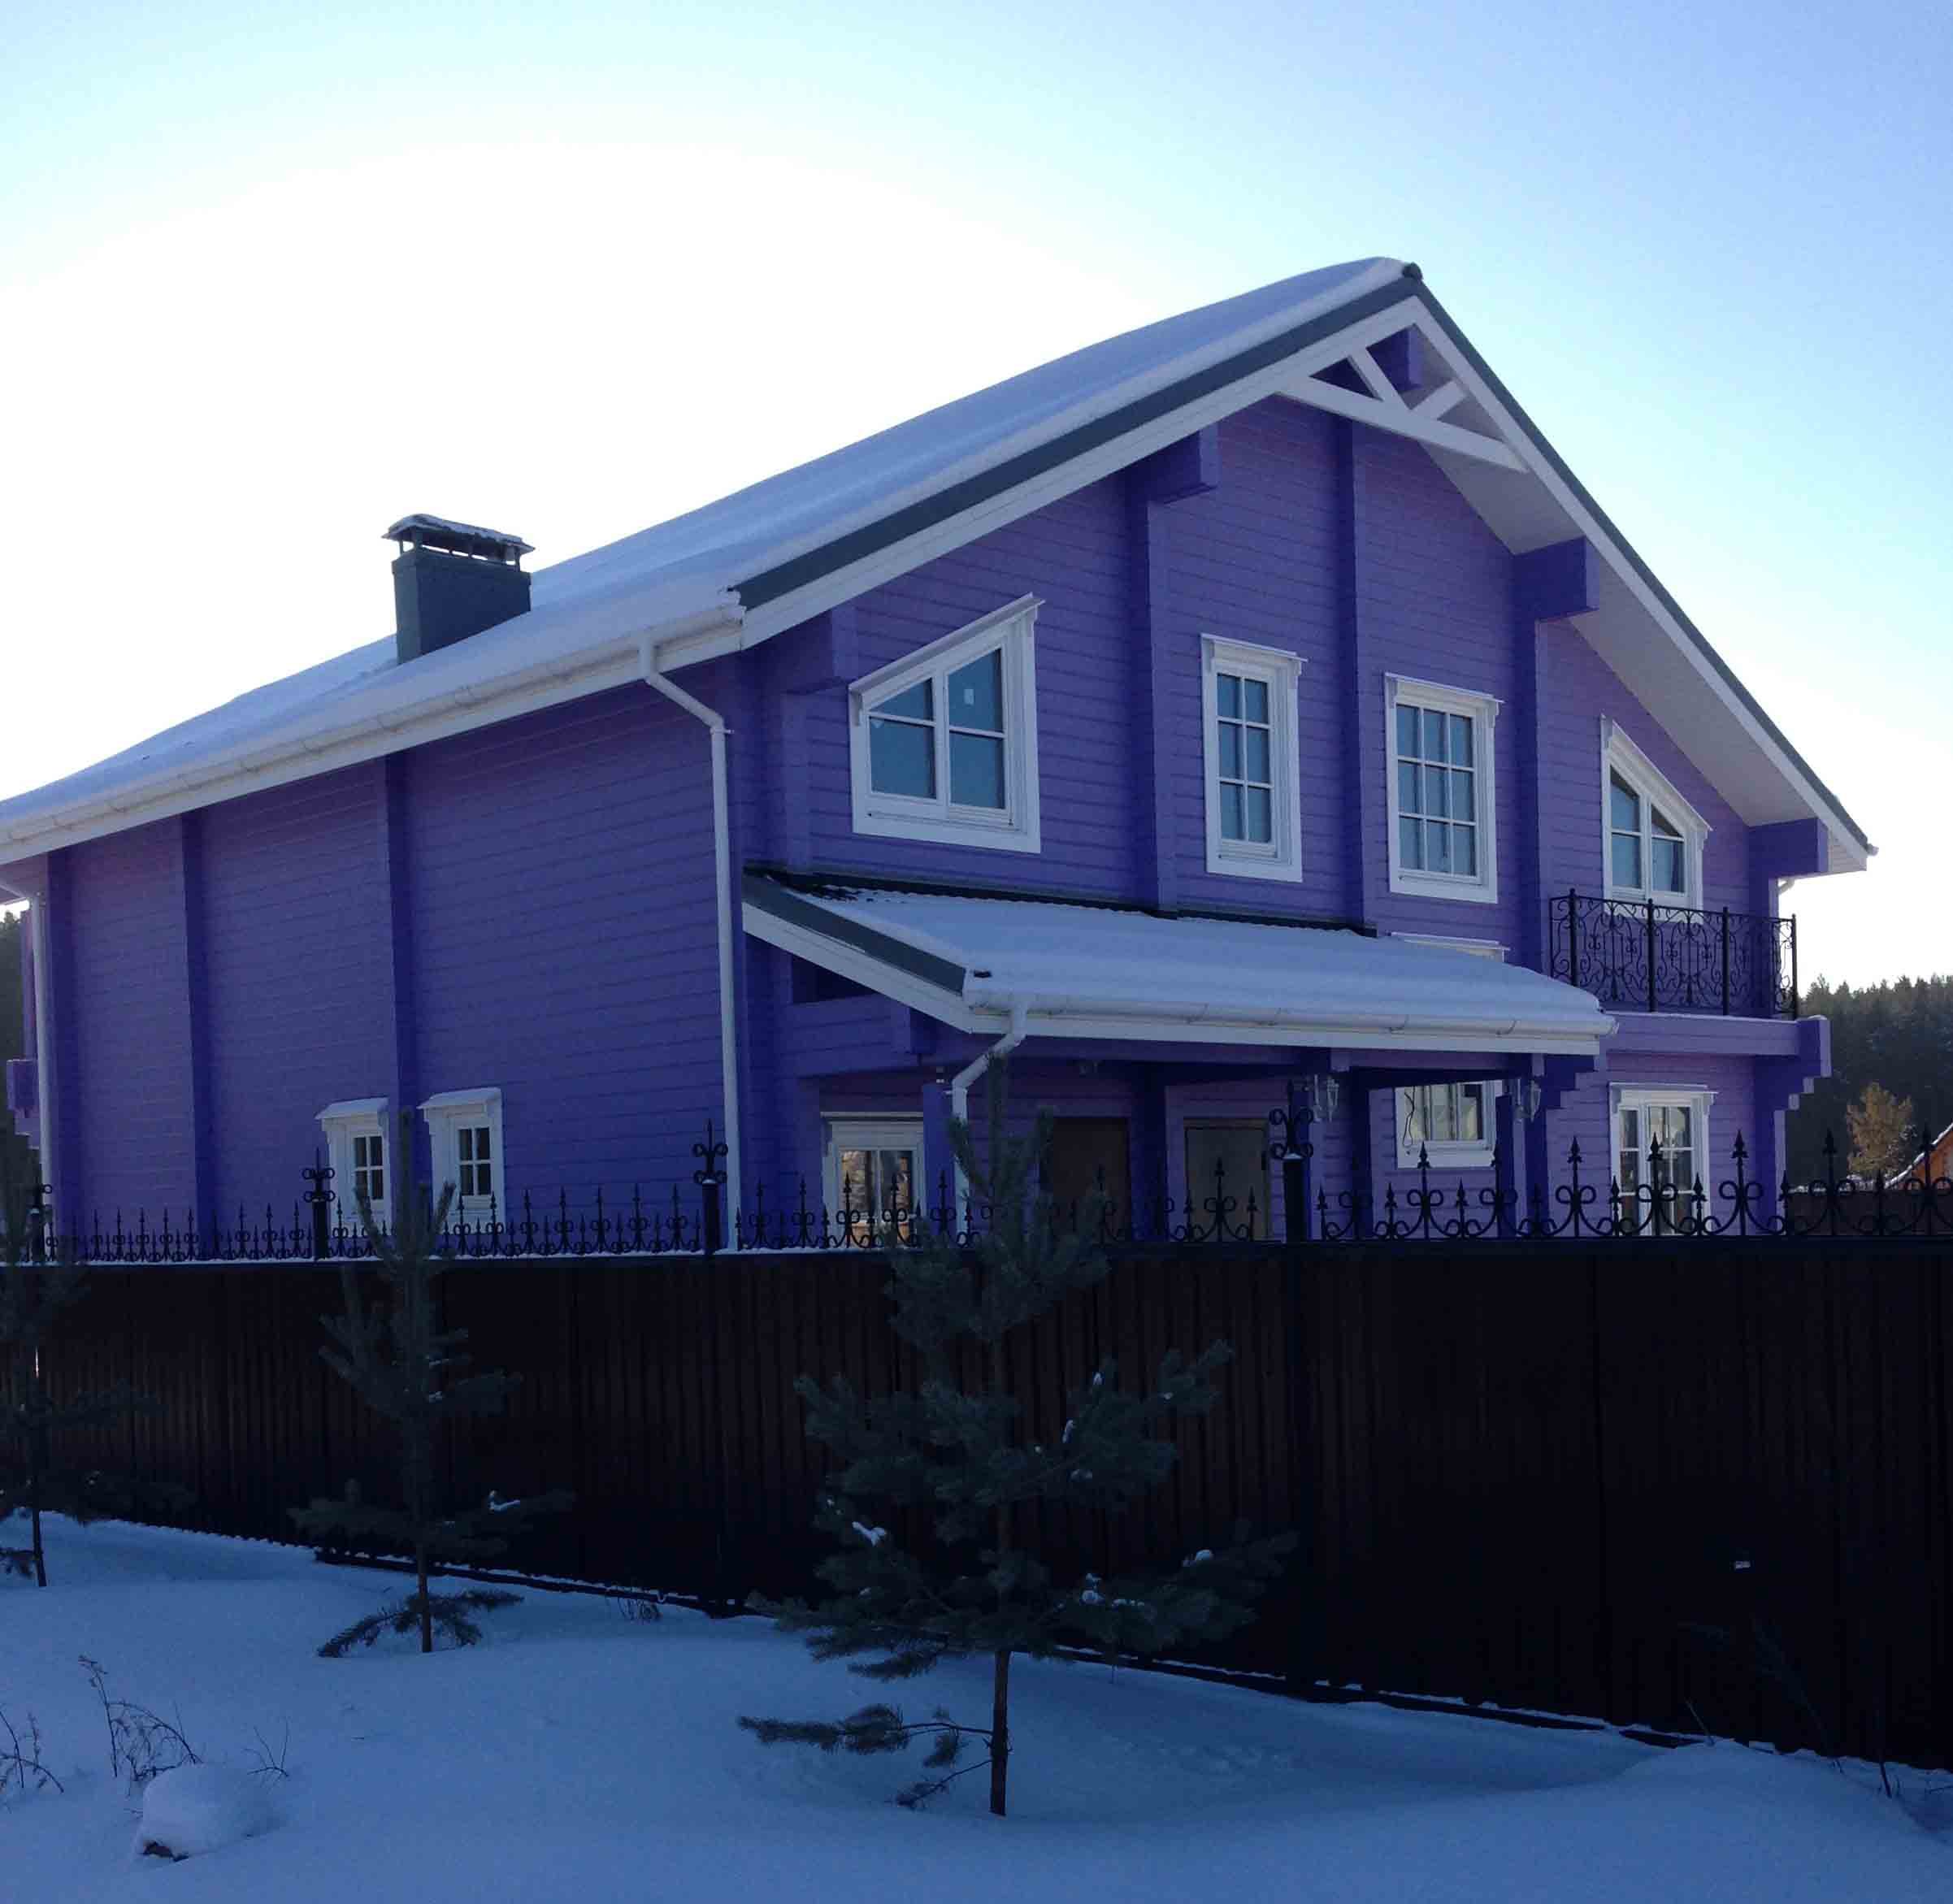 Цвета для покраски дома. Цвета домов. Цвета деревянных домов. Красивые цвета домов. Фасад дома синего цвета.